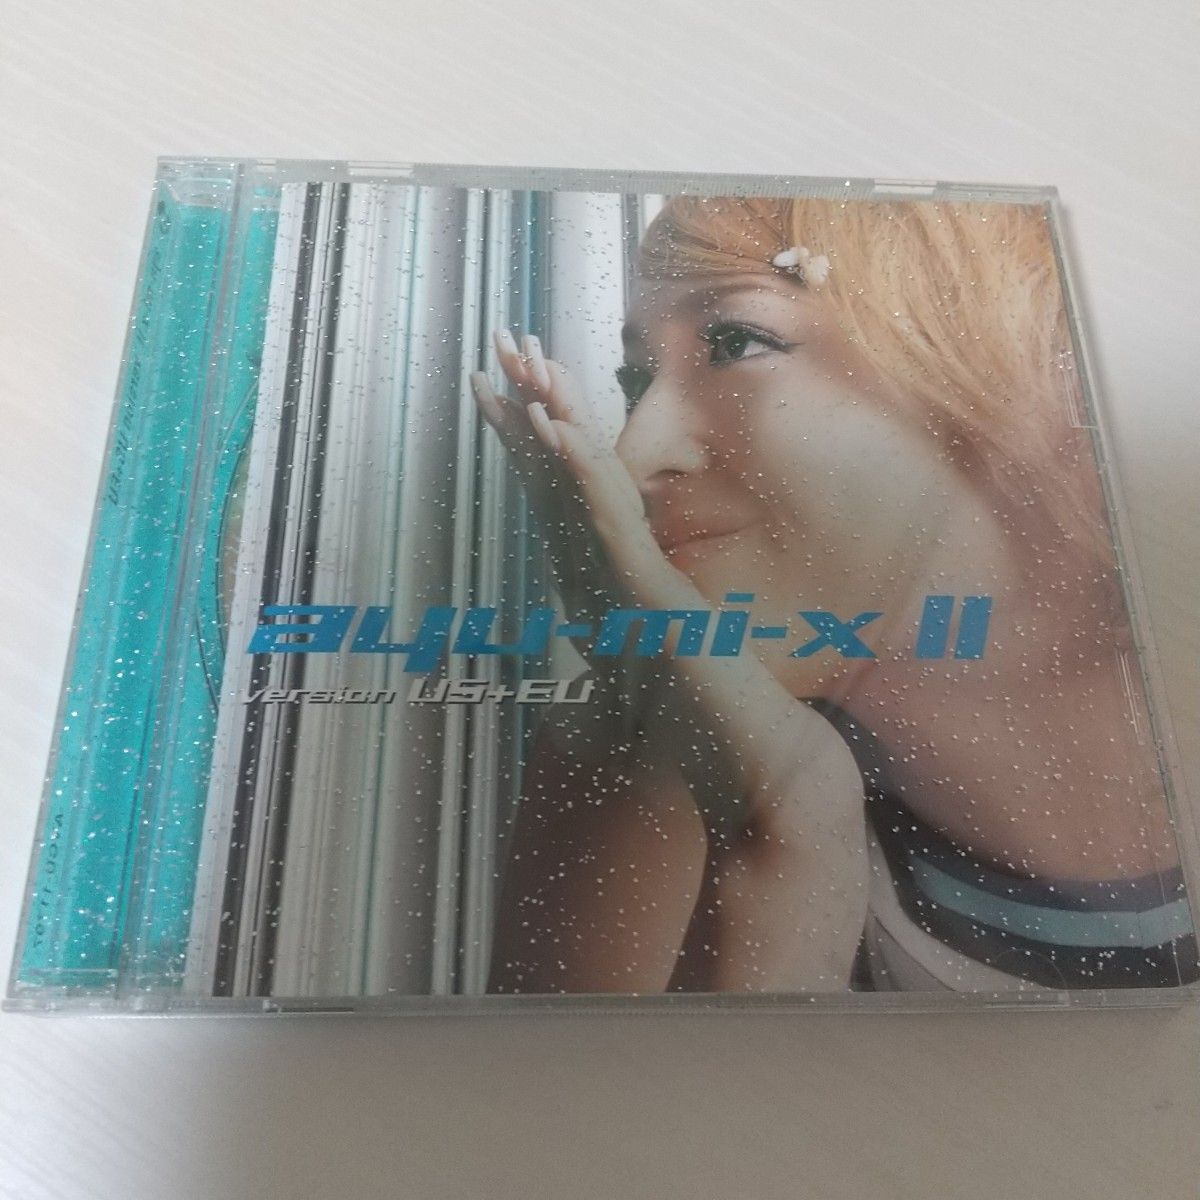 「浜崎あゆみ/ayu-mi-x2 version US+UK」